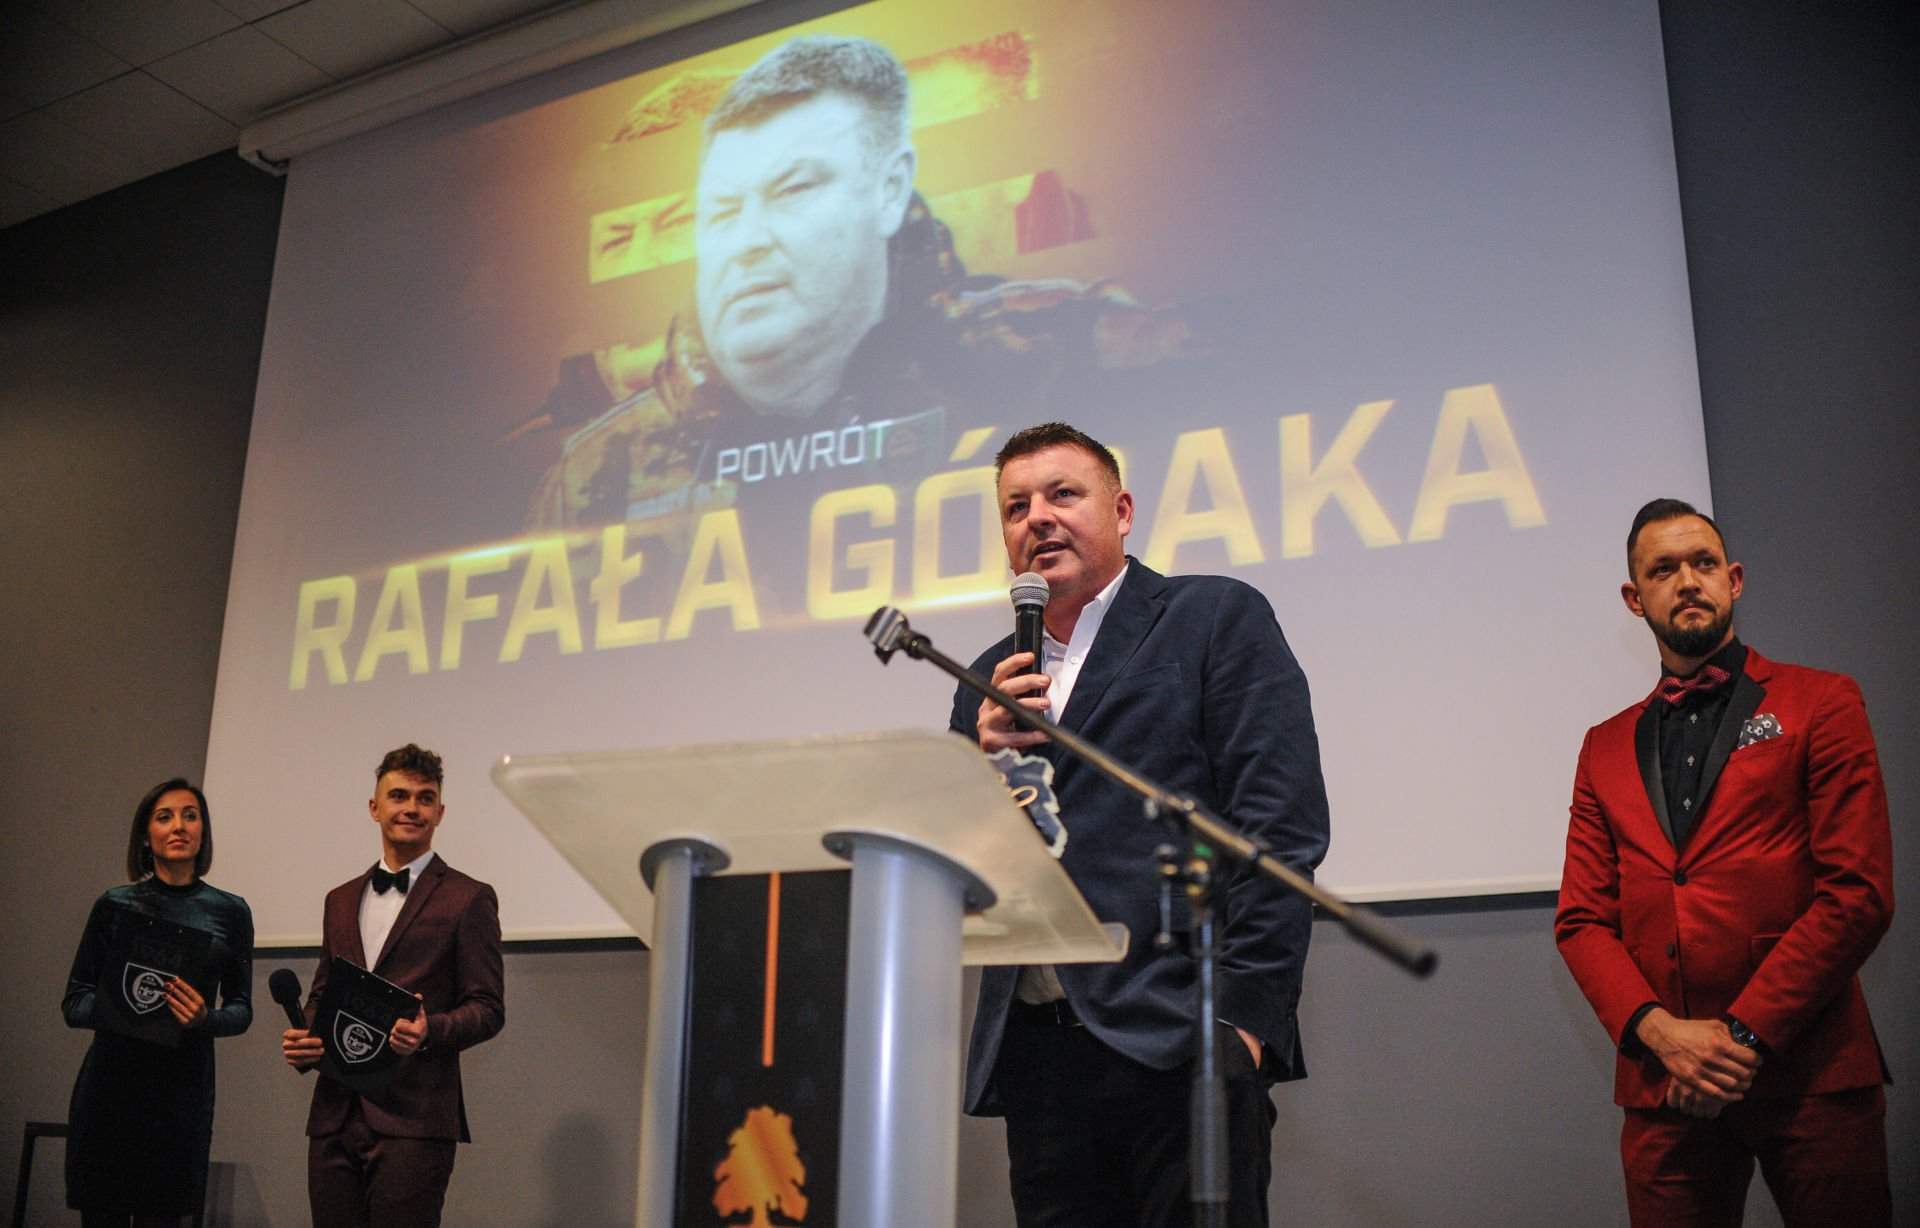 Gala Złotych Buków, kibice powrót Rafała Góraka uznali za najważniejsze wydarzenie 2019 roku w GKS-ie Katowice.